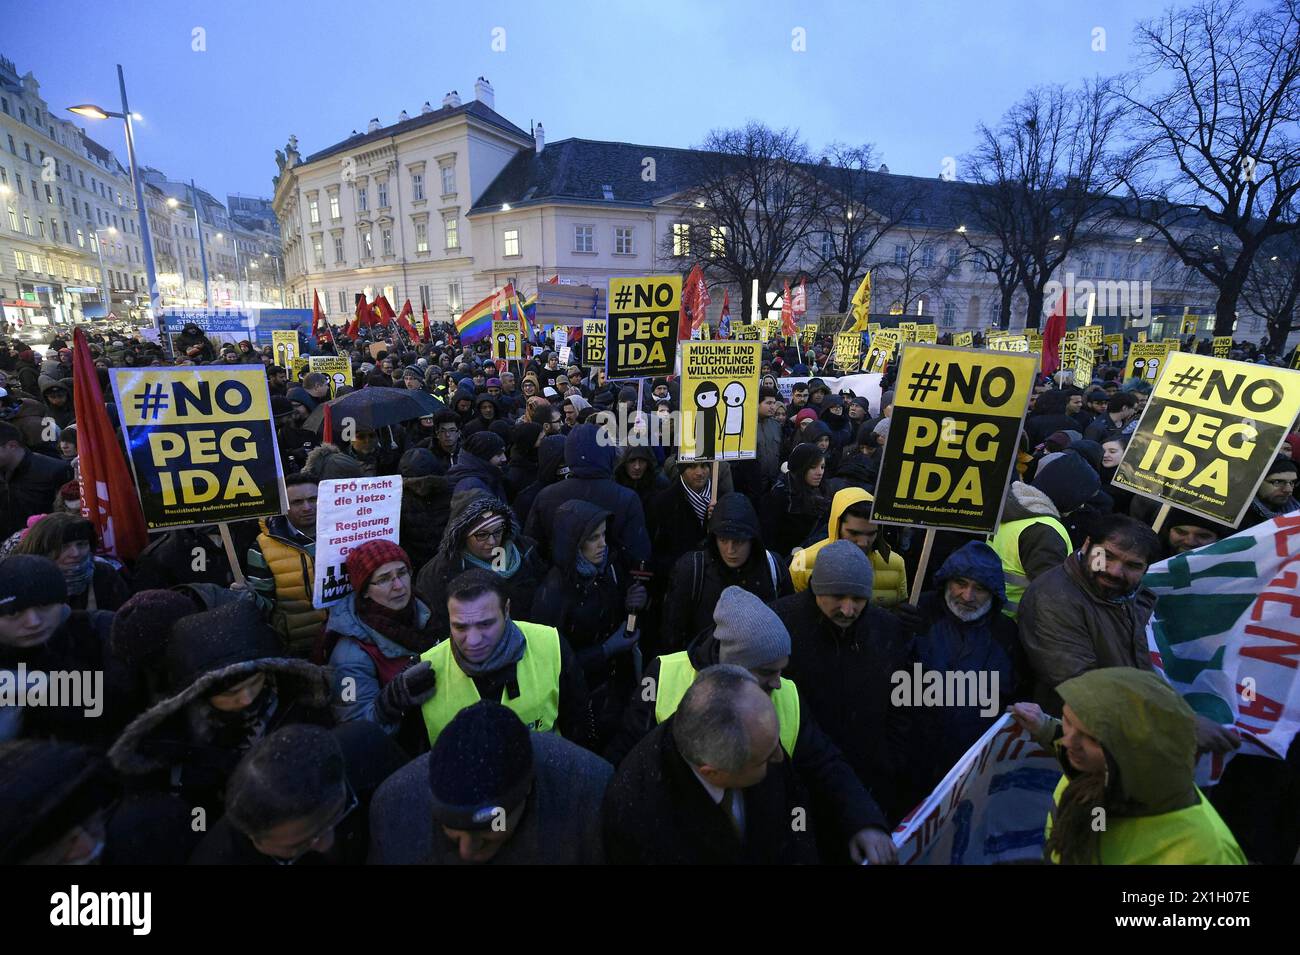 Manifestation contre le rassemblement du mouvement anti-islam Pegida-Vienne (les Européens patriotiques contre l'islamisation de l'Occident) à Vienne, Autriche, le 2 février 2015. - 20150202 PD3064 - Rechteinfo : droits gérés (RM) Banque D'Images